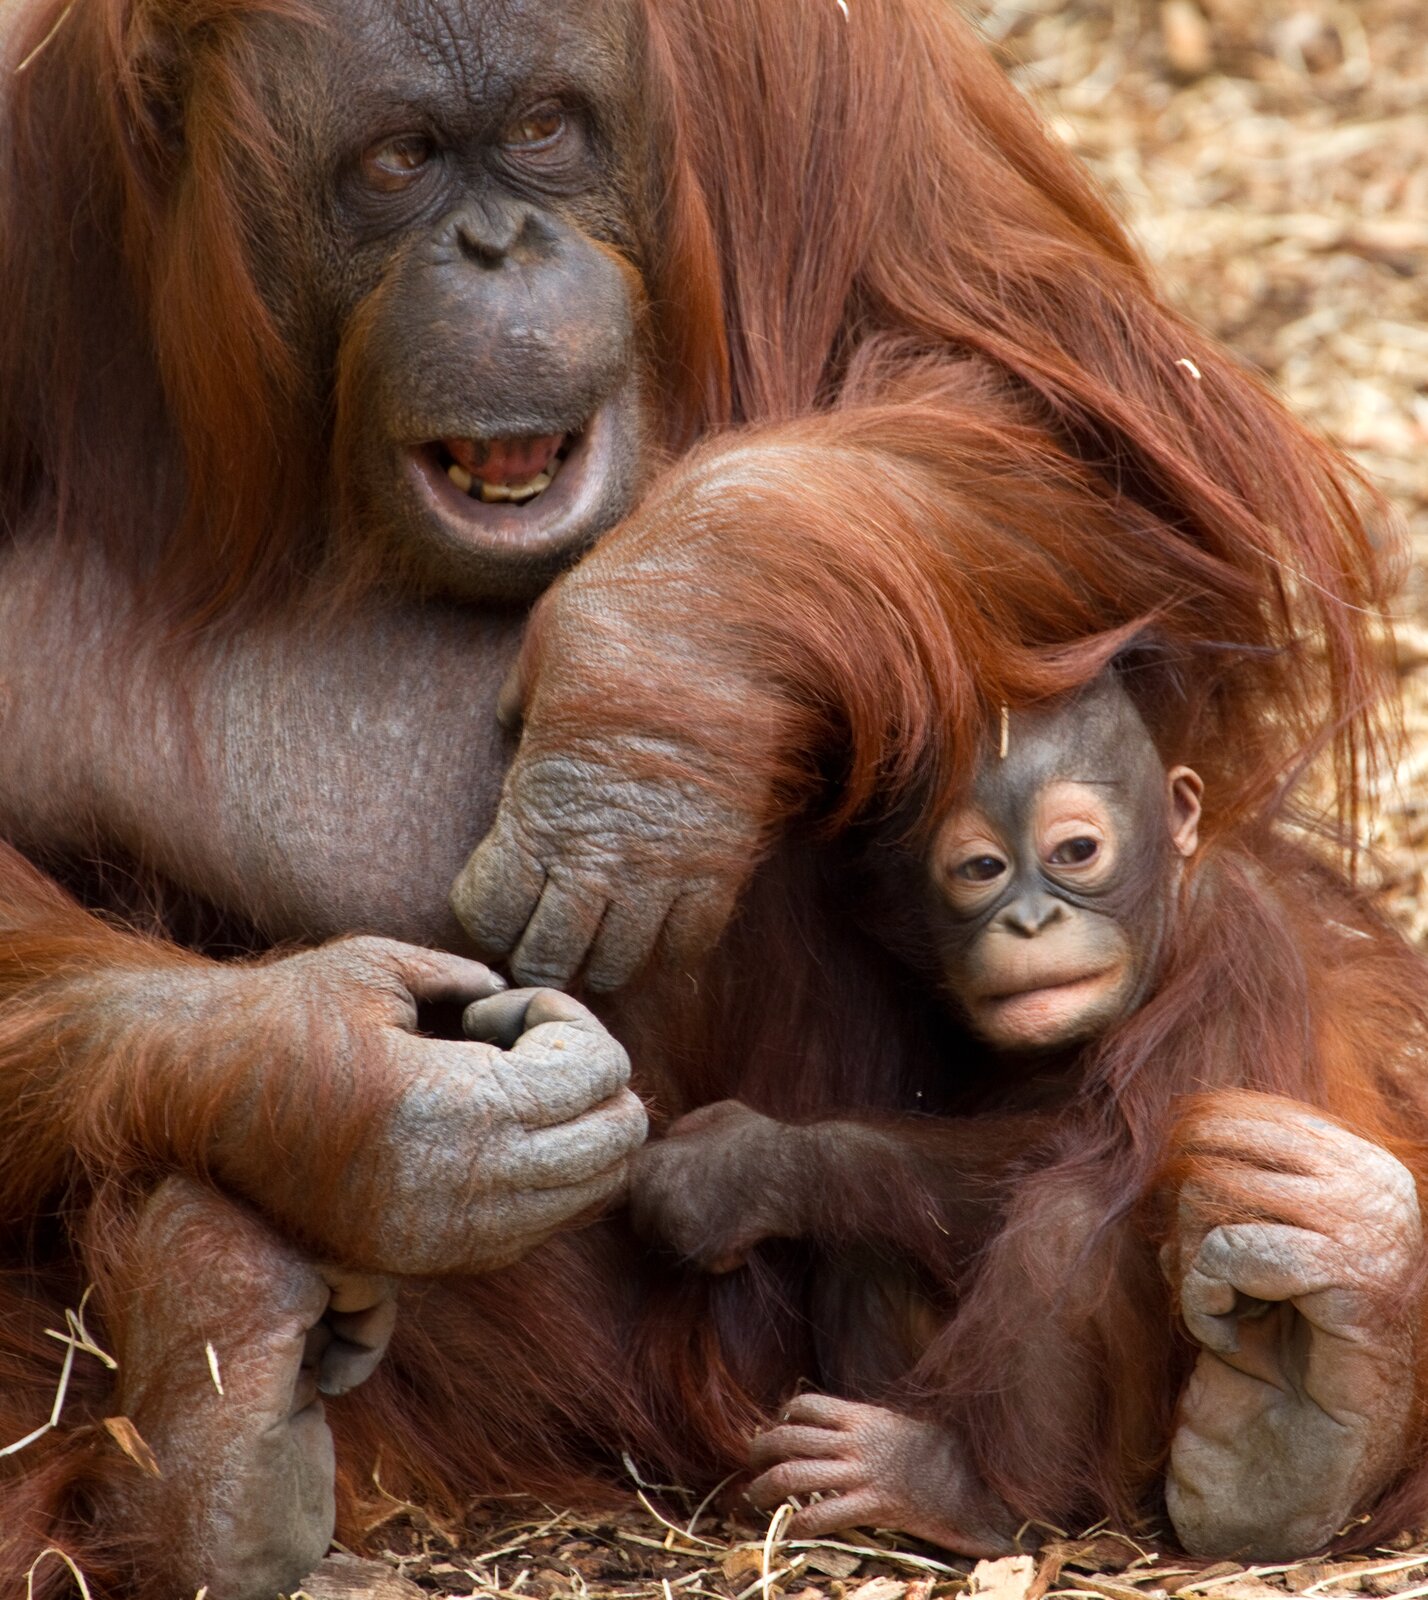 Fotografia przedstawia rudą samicę orangutana z dwoma młodymi. Samica siedzi w trawie i przygarnia młode do siebie długimi rękami. Maluchy orangutana trzymają się matki, ale rozglądają na boki.